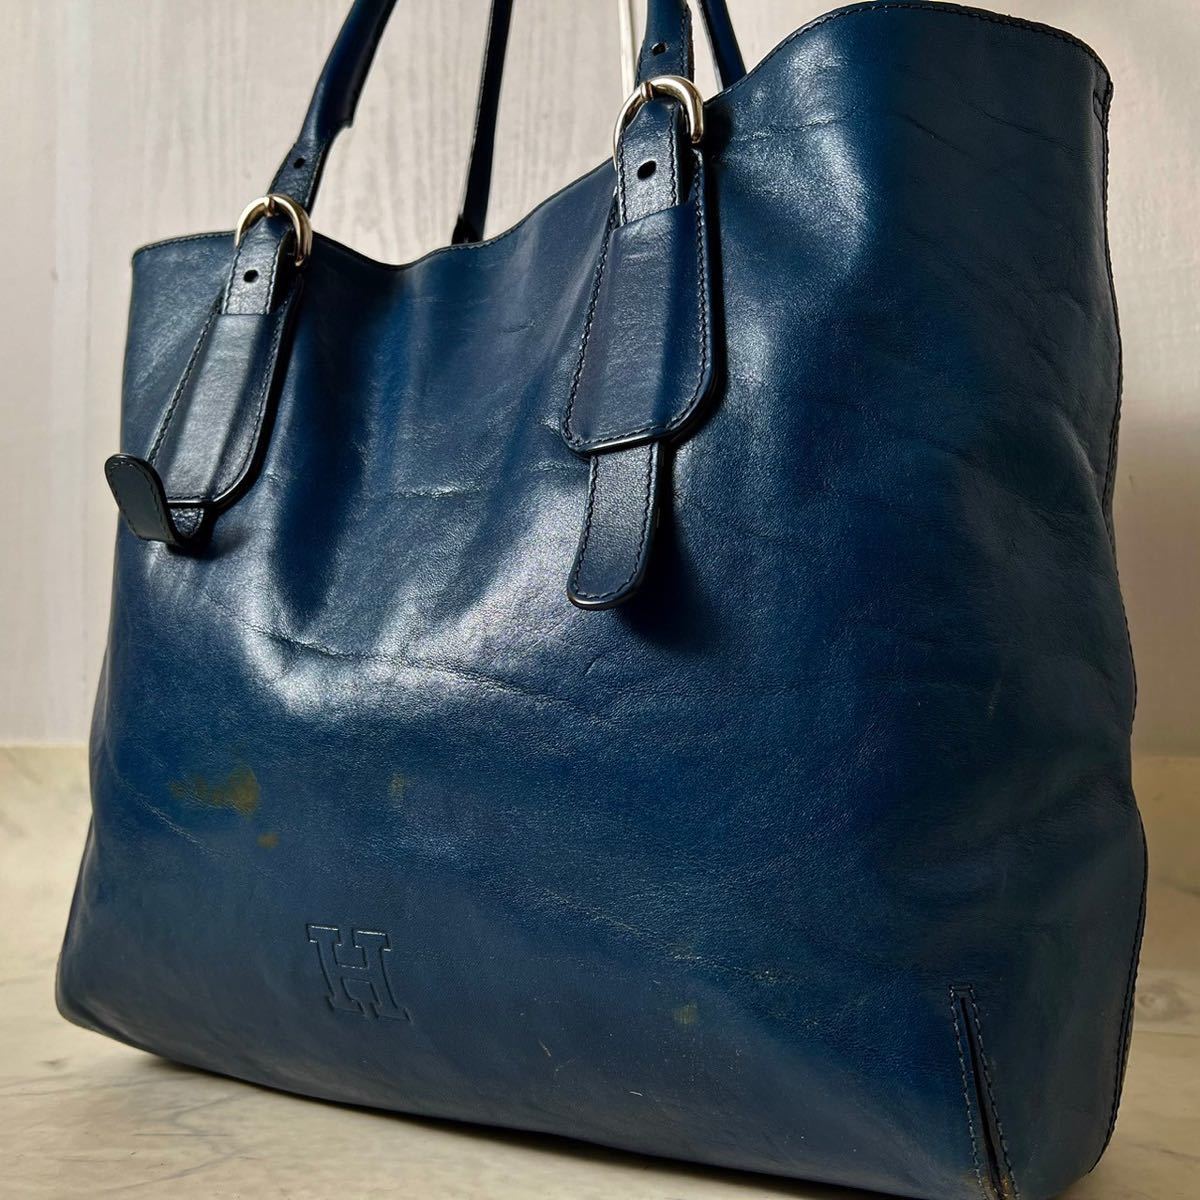  Hirofu большая сумка ручная сумочка бизнес A4 соответствует большая вместимость плечо ..[ редкий цвет ] все кожа натуральная кожа голубой HIROFU мужской 231130